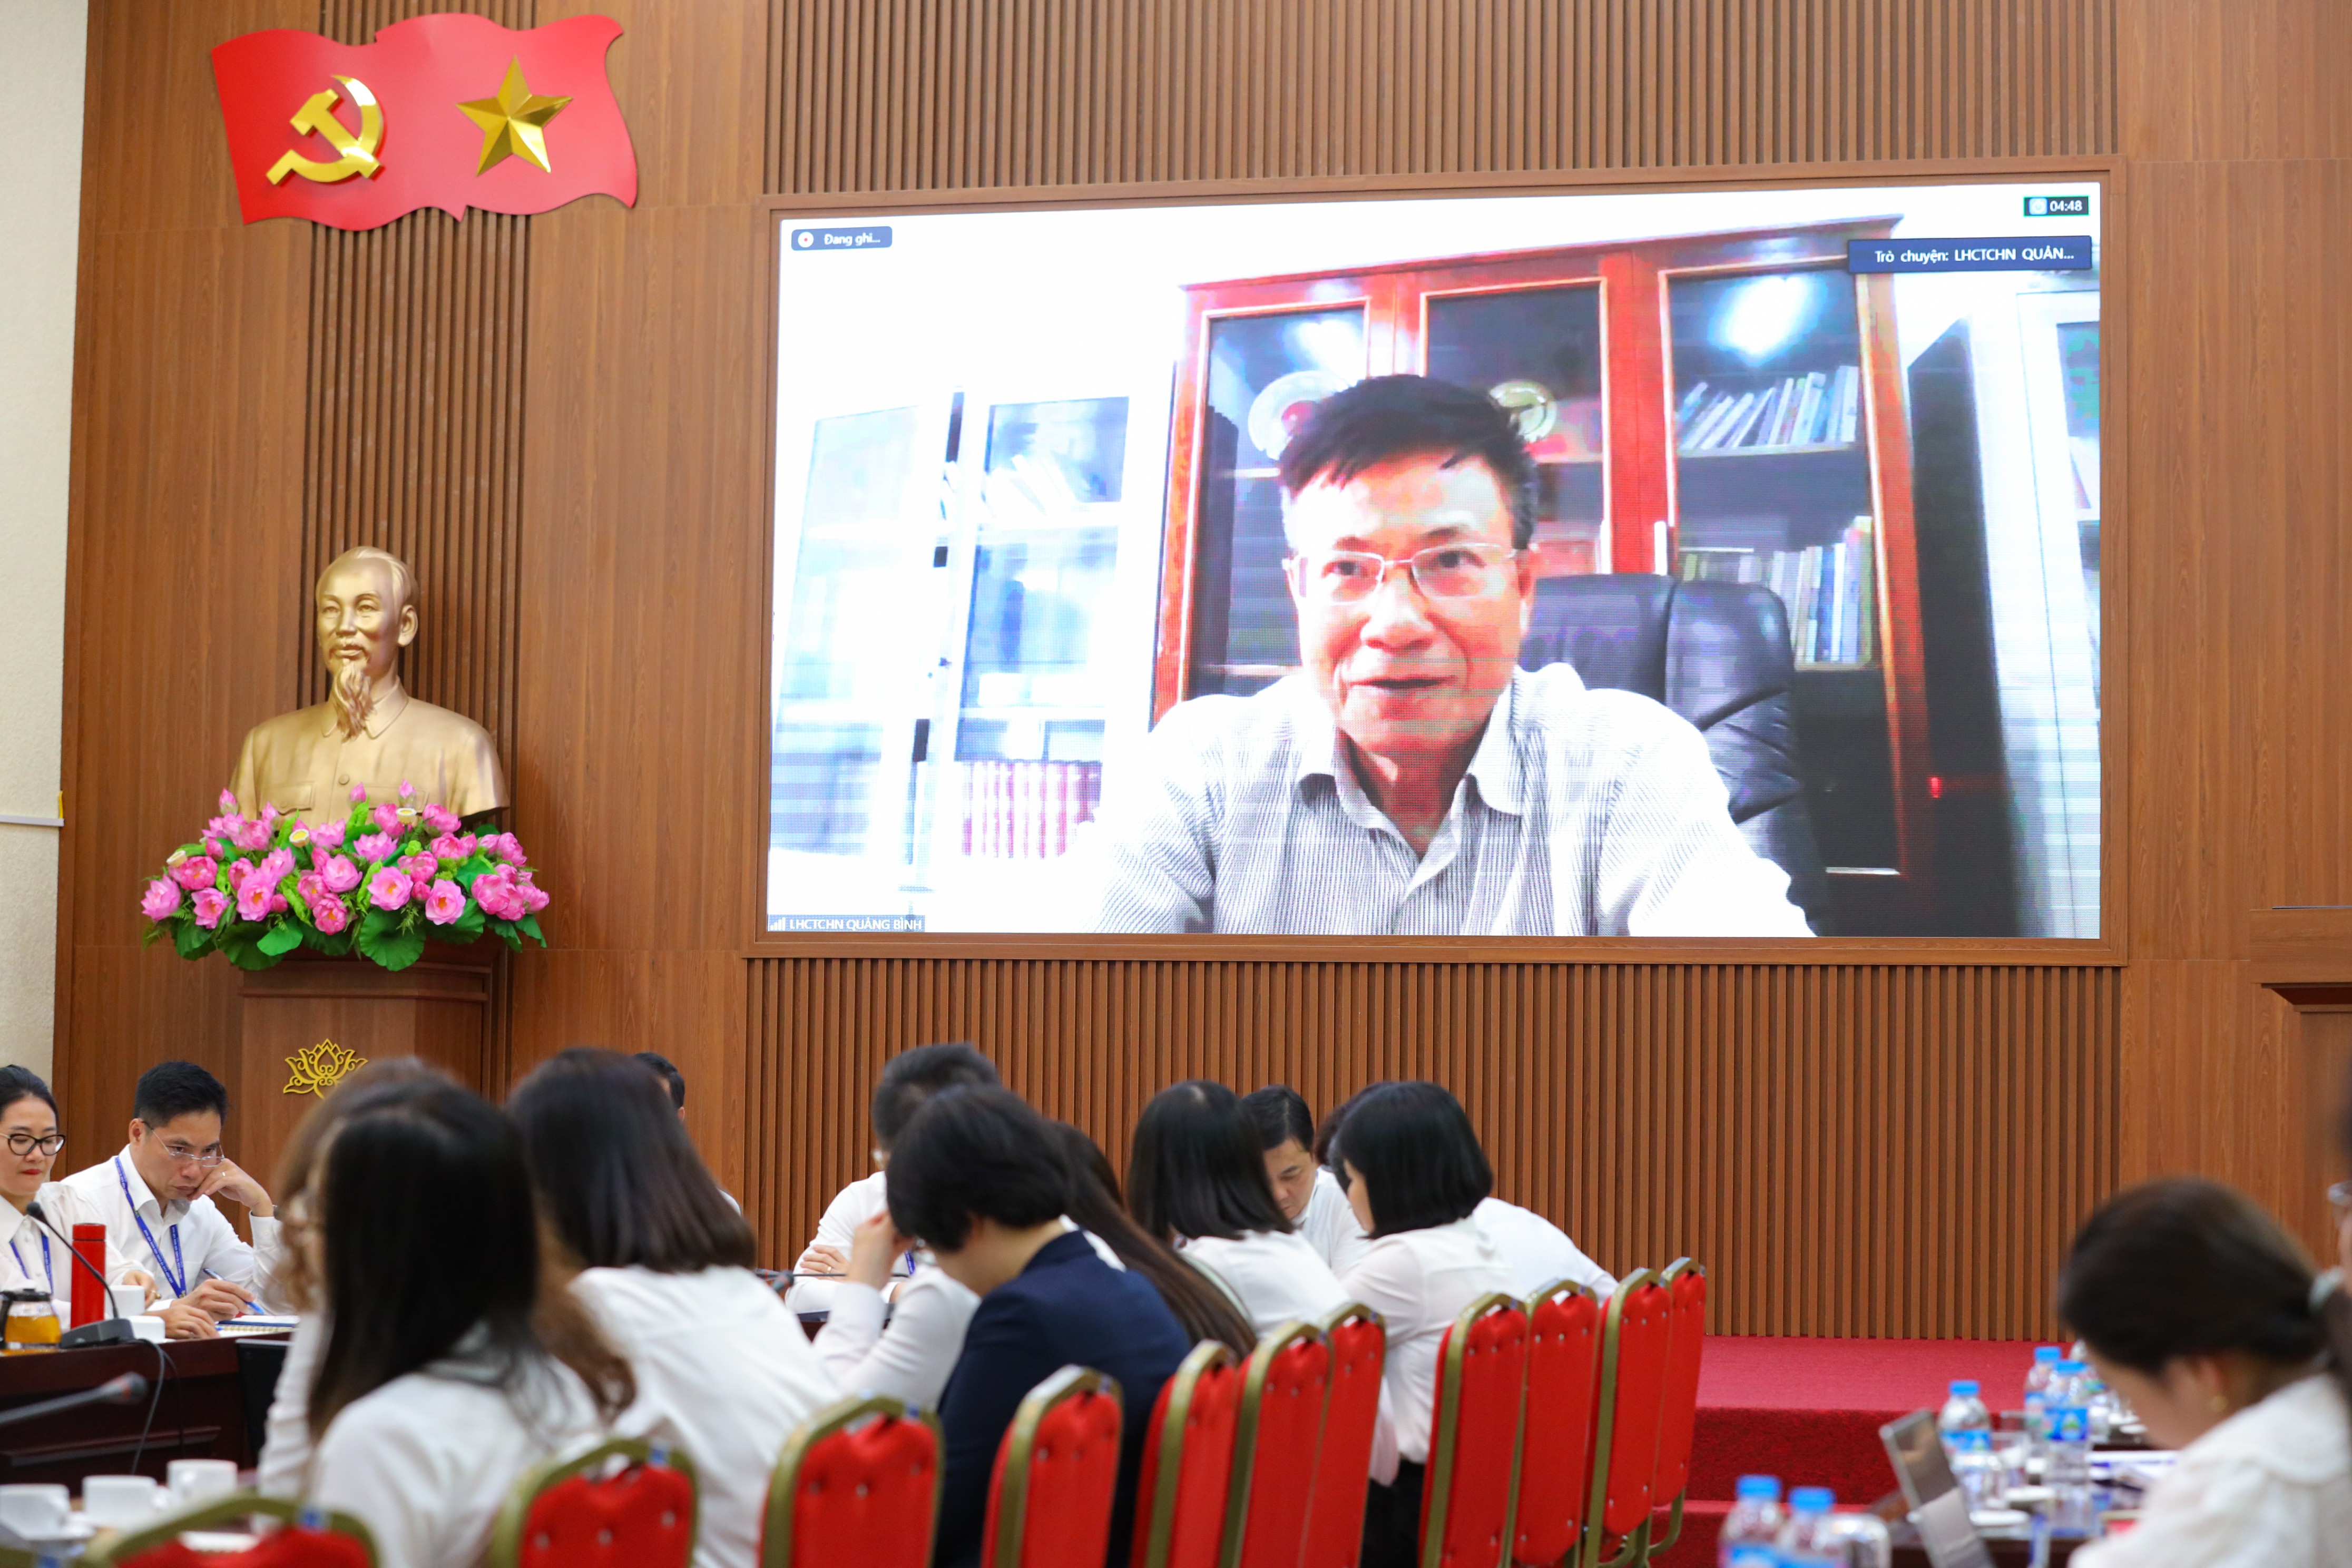 Ông Lương Ngọc Bính, Chủ tịch Liên hiệp các tổ chức hữu nghị tỉnh Quảng Bình phát biểu tại điểm cầu Quảng Bình. (Ảnh: Đinh Hòa)